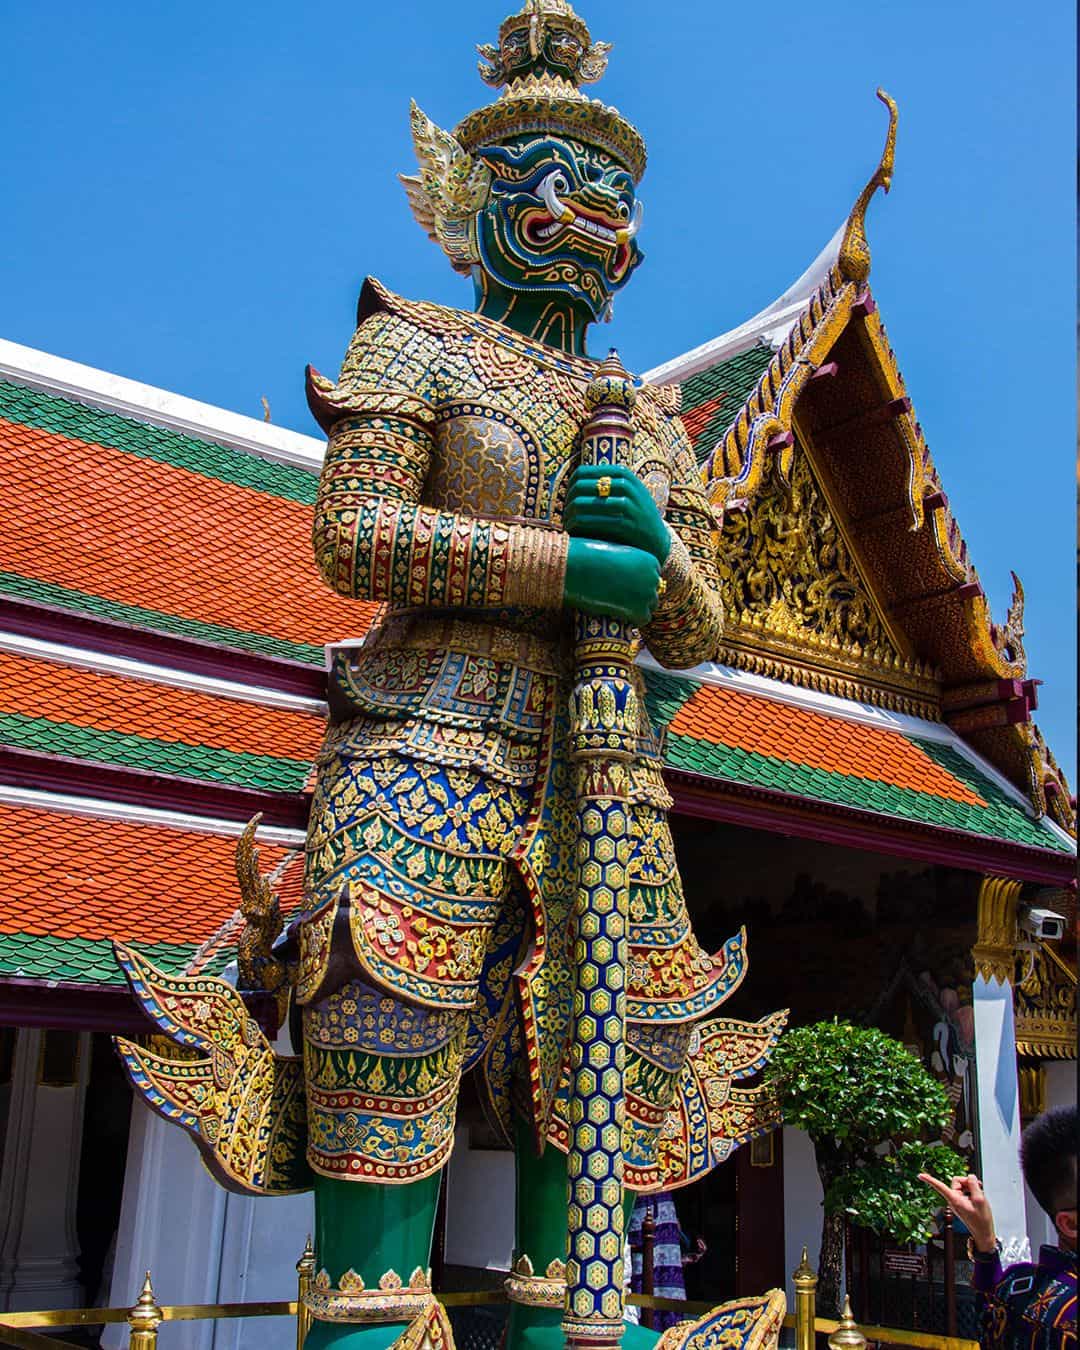 Grand Palace & Wat Phra Kaew (Emerald Buddha Temple)